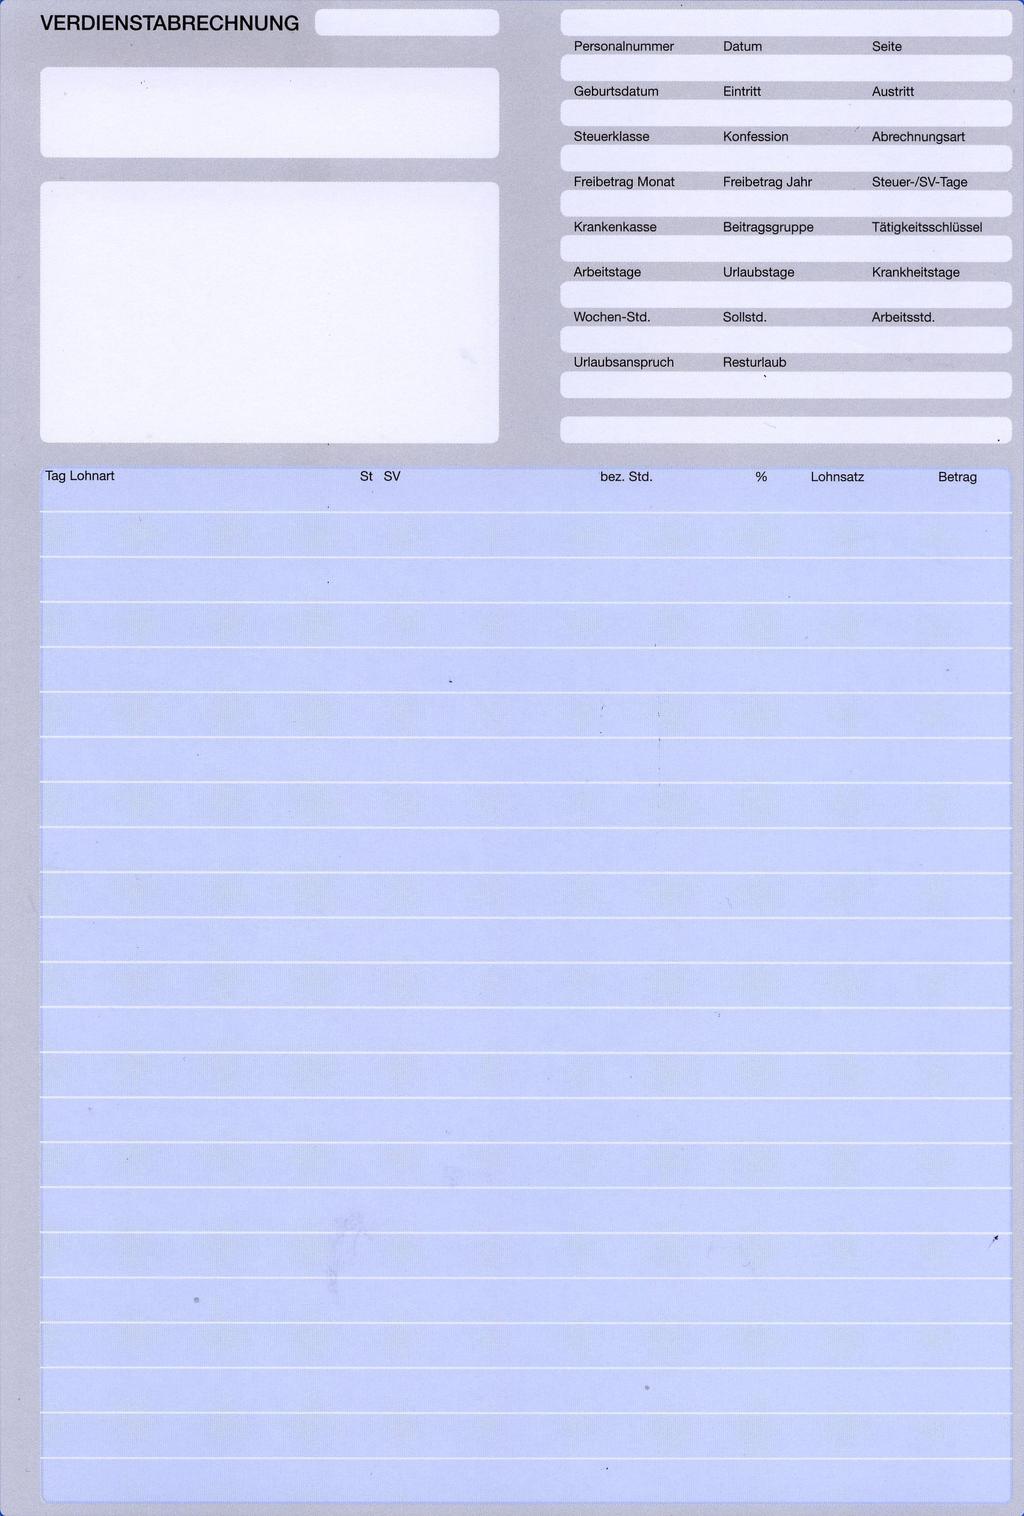 Formulare für die Lohnbuchhaltung Verdienstabrechnungen Format IBM HS/2 Einzelblatt. Auch als Endlosformulare Lohntüte - für Matrix Drucker erhältlich.